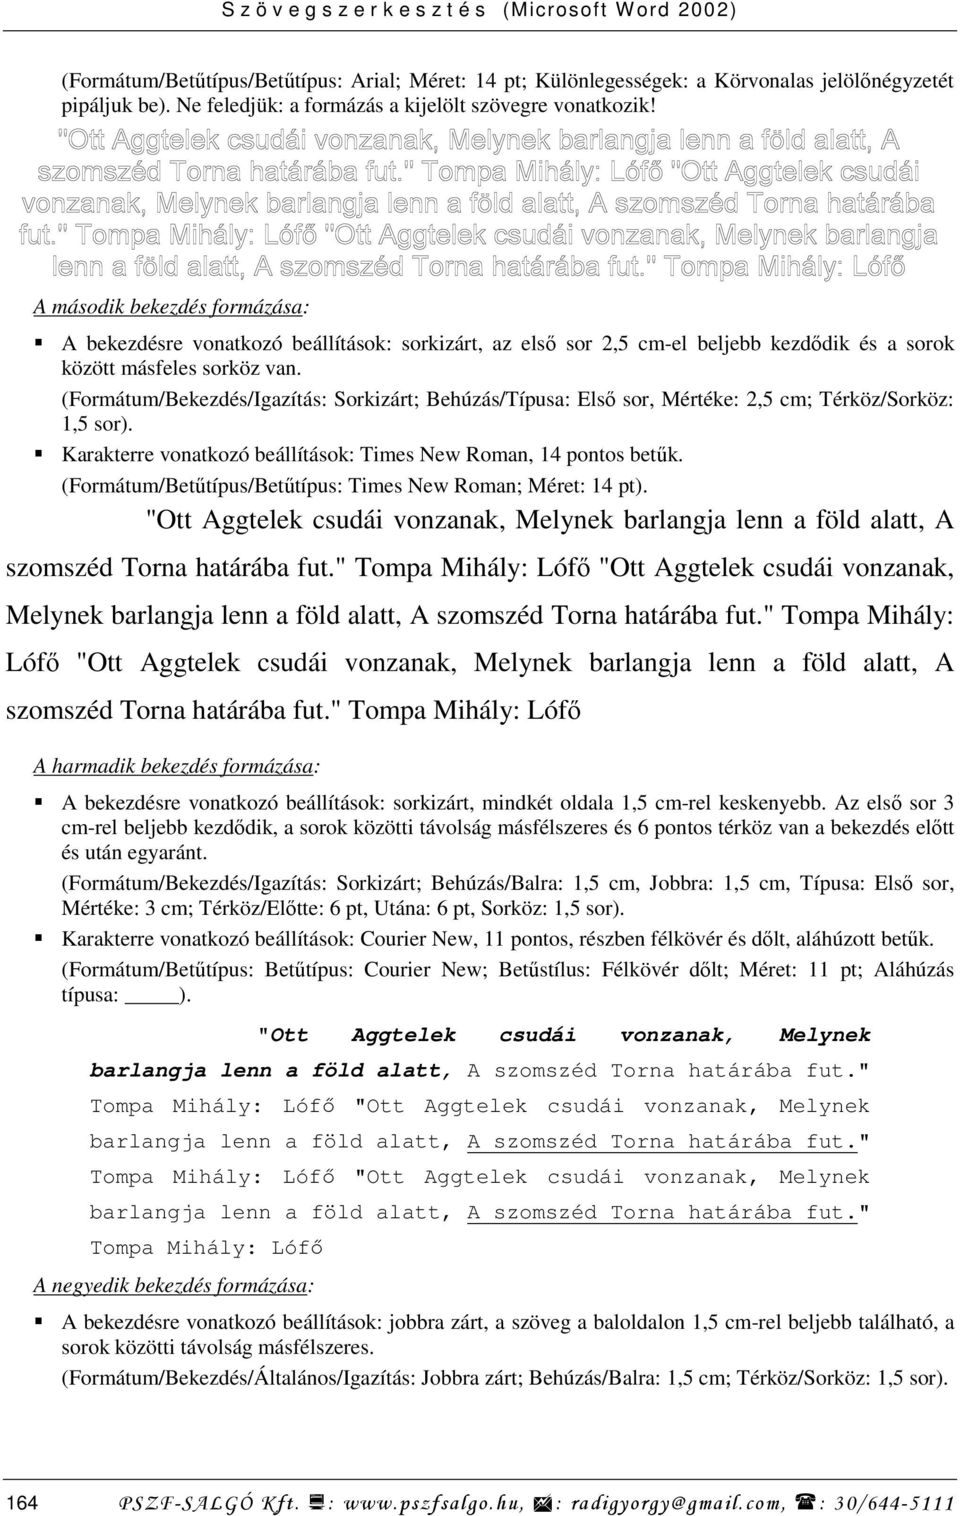 (Formátum/Bekezdés/Igazítás: Sorkizárt; Behúzás/Típusa: Elsı sor, Mértéke: 2,5 cm; Térköz/Sorköz: 1,5 sor). Karakterre vonatkozó beállítások: Times New Roman, 14 pontos betők.